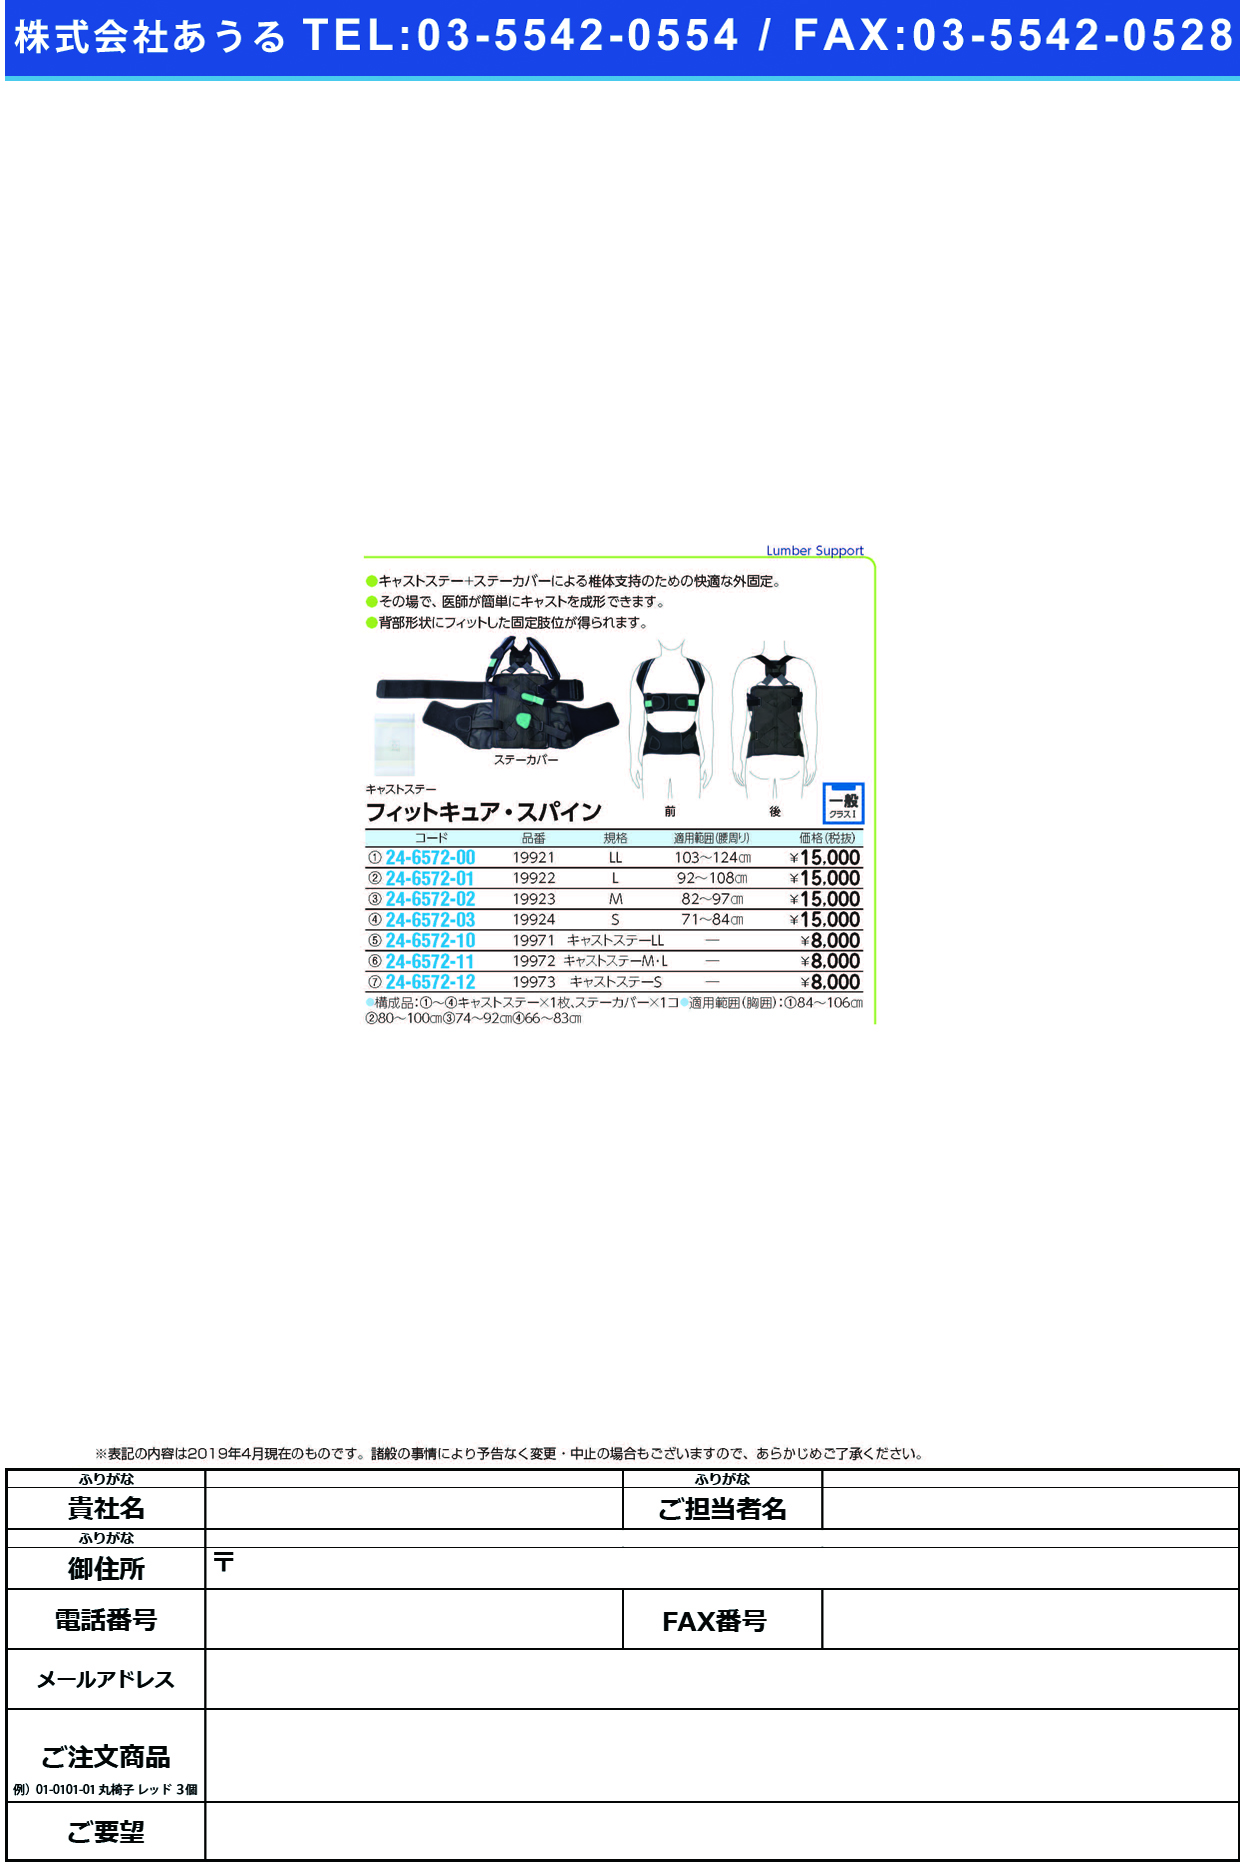 (24-6572-12)キャストステーＳ 19973(ﾌｨｯﾄｷｭｱｽﾊﾟｲﾝﾖｳ ｷｬｽﾄｽﾃｰS(アルケア)【1枚単位】【2019年カタログ商品】